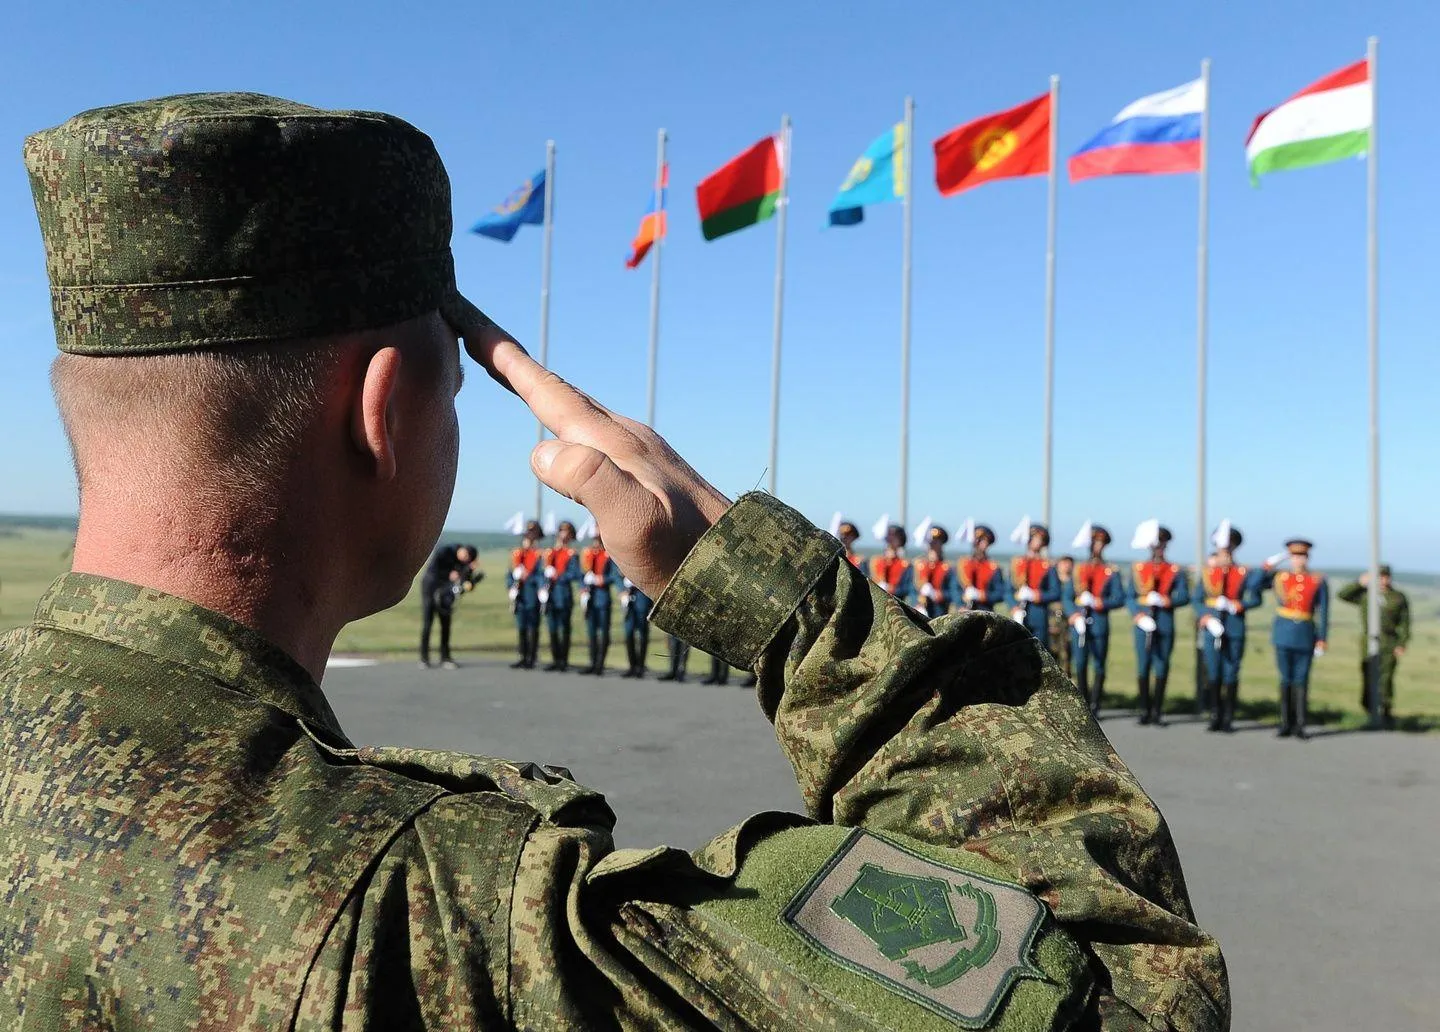 НАТО игнорирует предложения о сотрудничестве от ОДКБ - Семериков